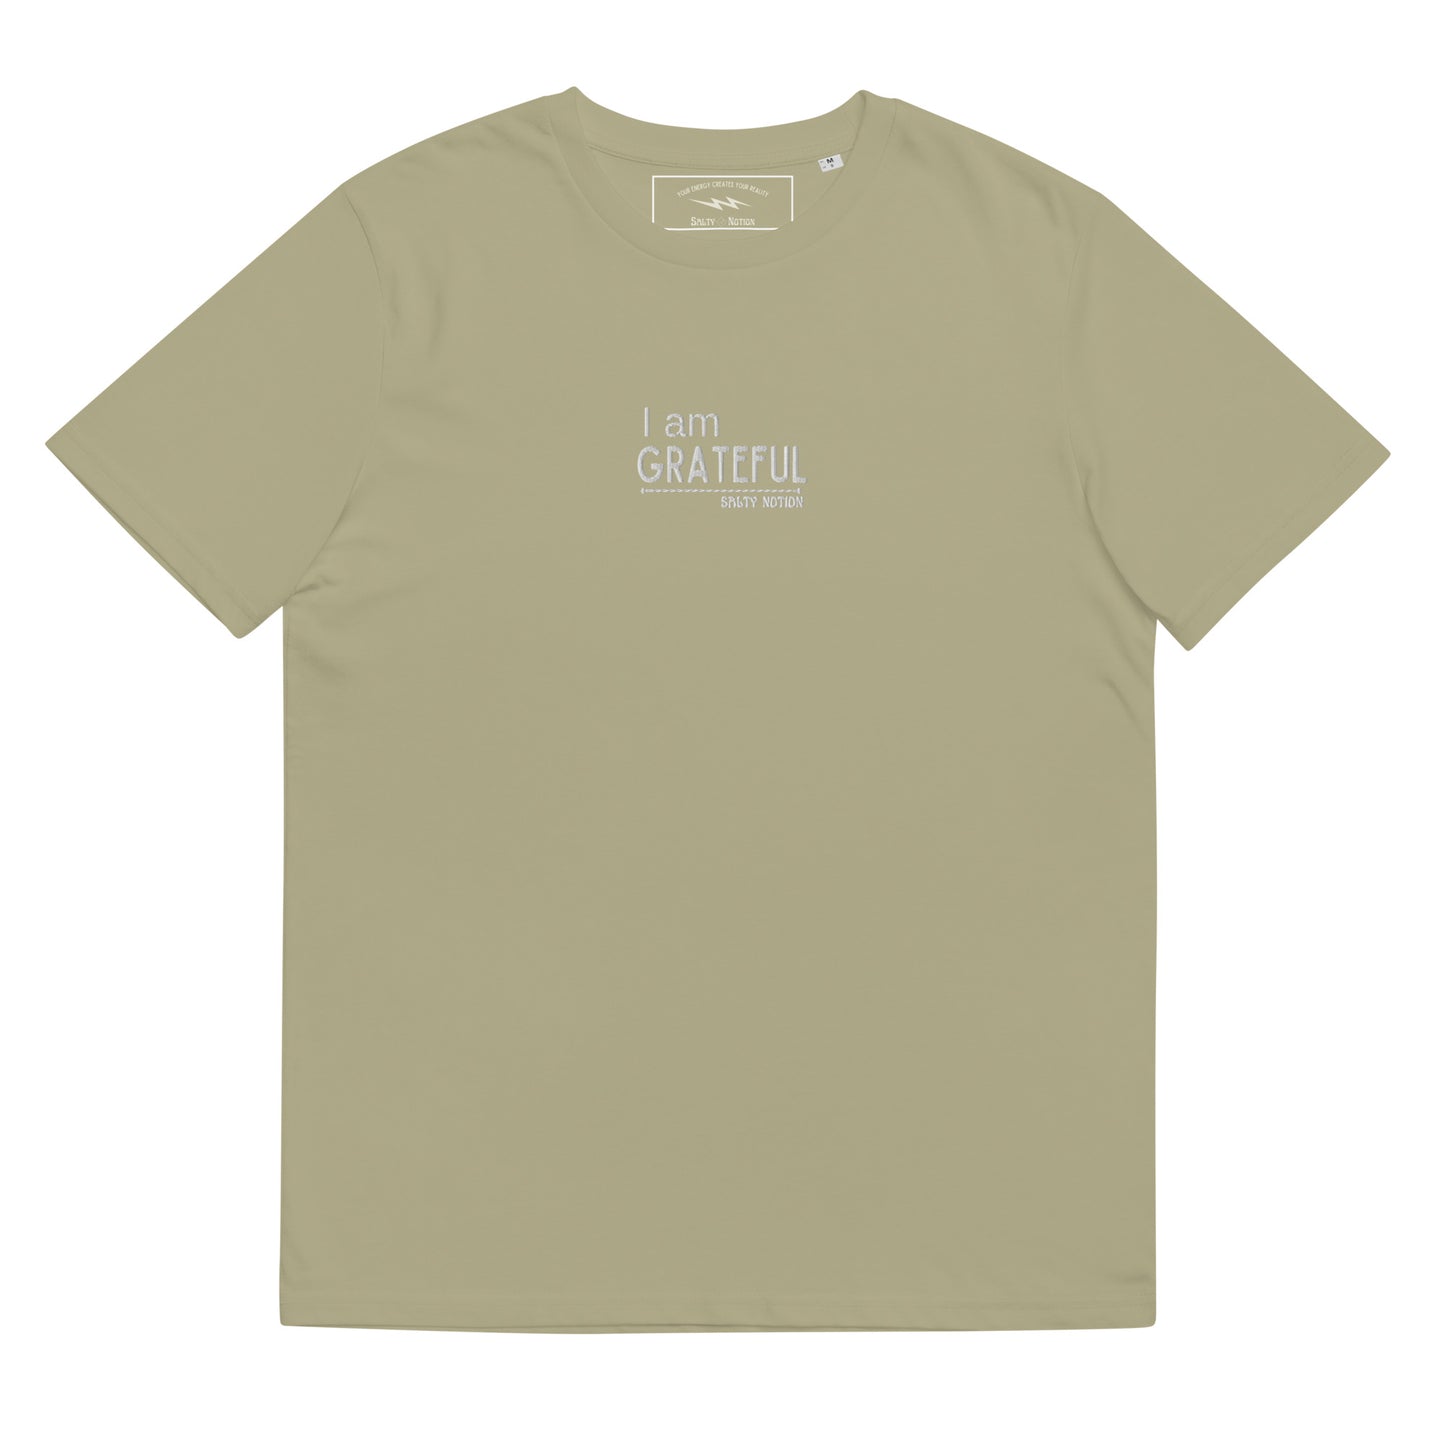 Organic Grateful Embroidery  T-Shirt Desert Dust/Black/Sage/Dark Heather Blue/Stargazer/Burgundy/Navy